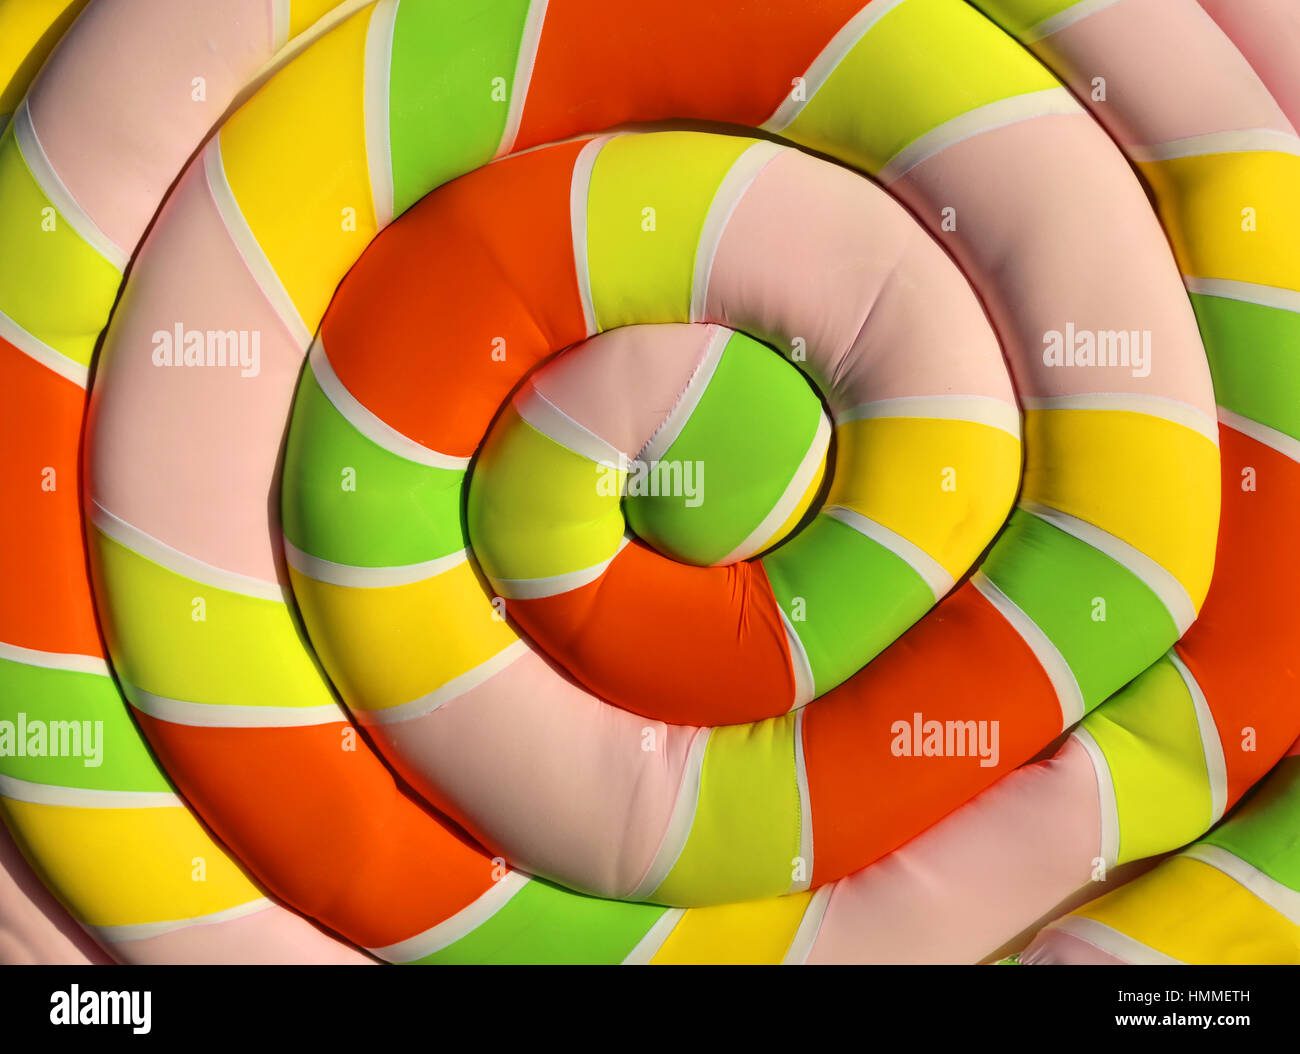 Grande morbido cuscino conformato come un gigante di marshmallow con una spirale colorata Foto Stock